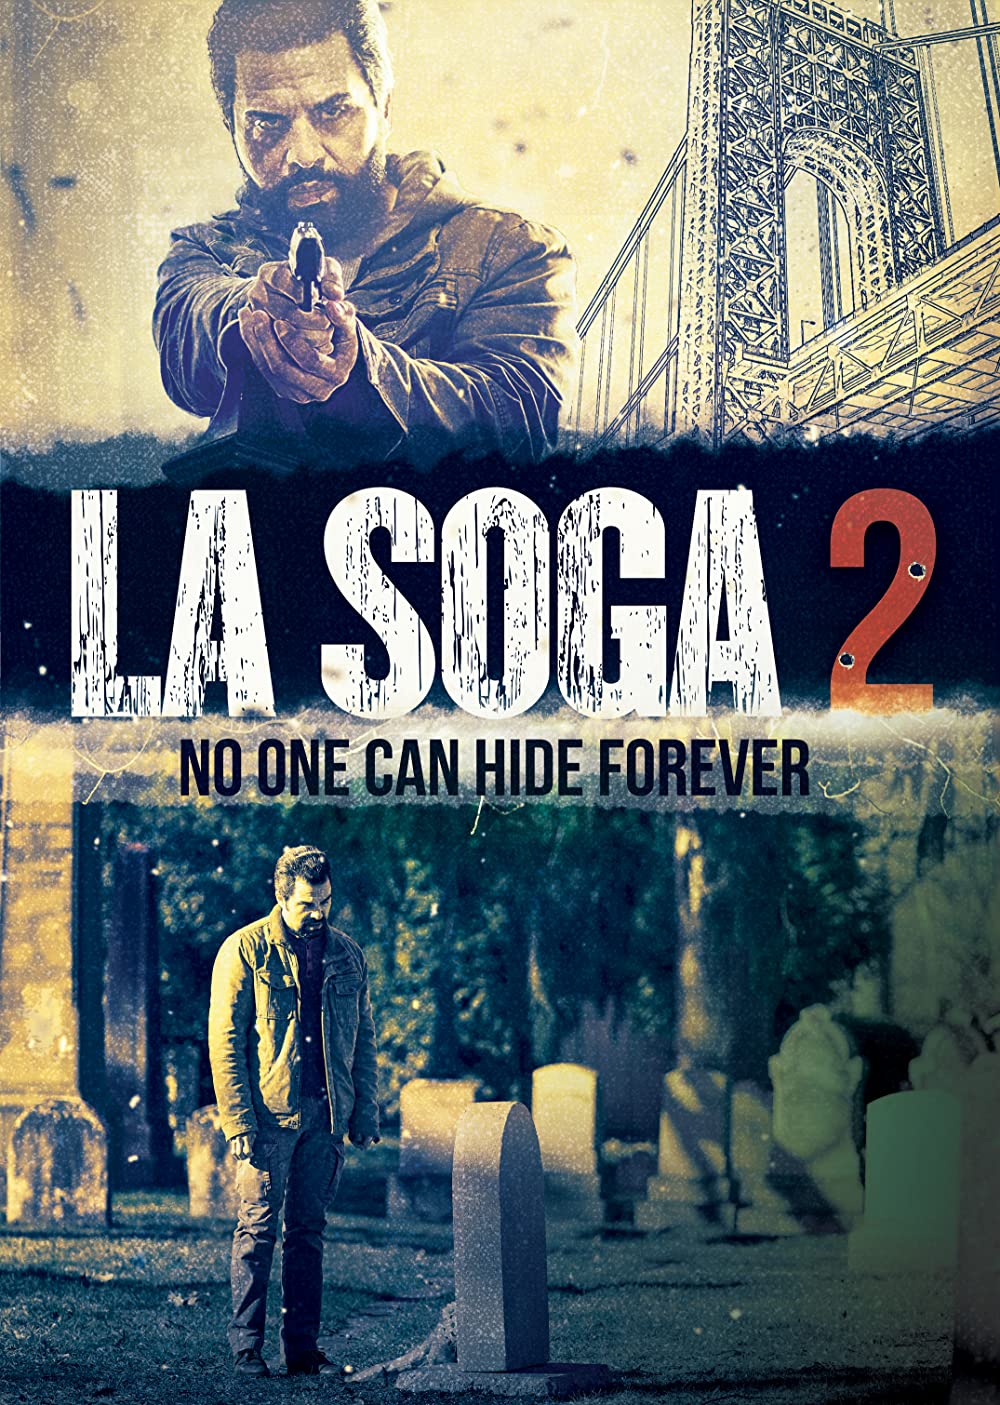 MS Cinema News: Sale tráiler de La Soga 2 secuela del hit de